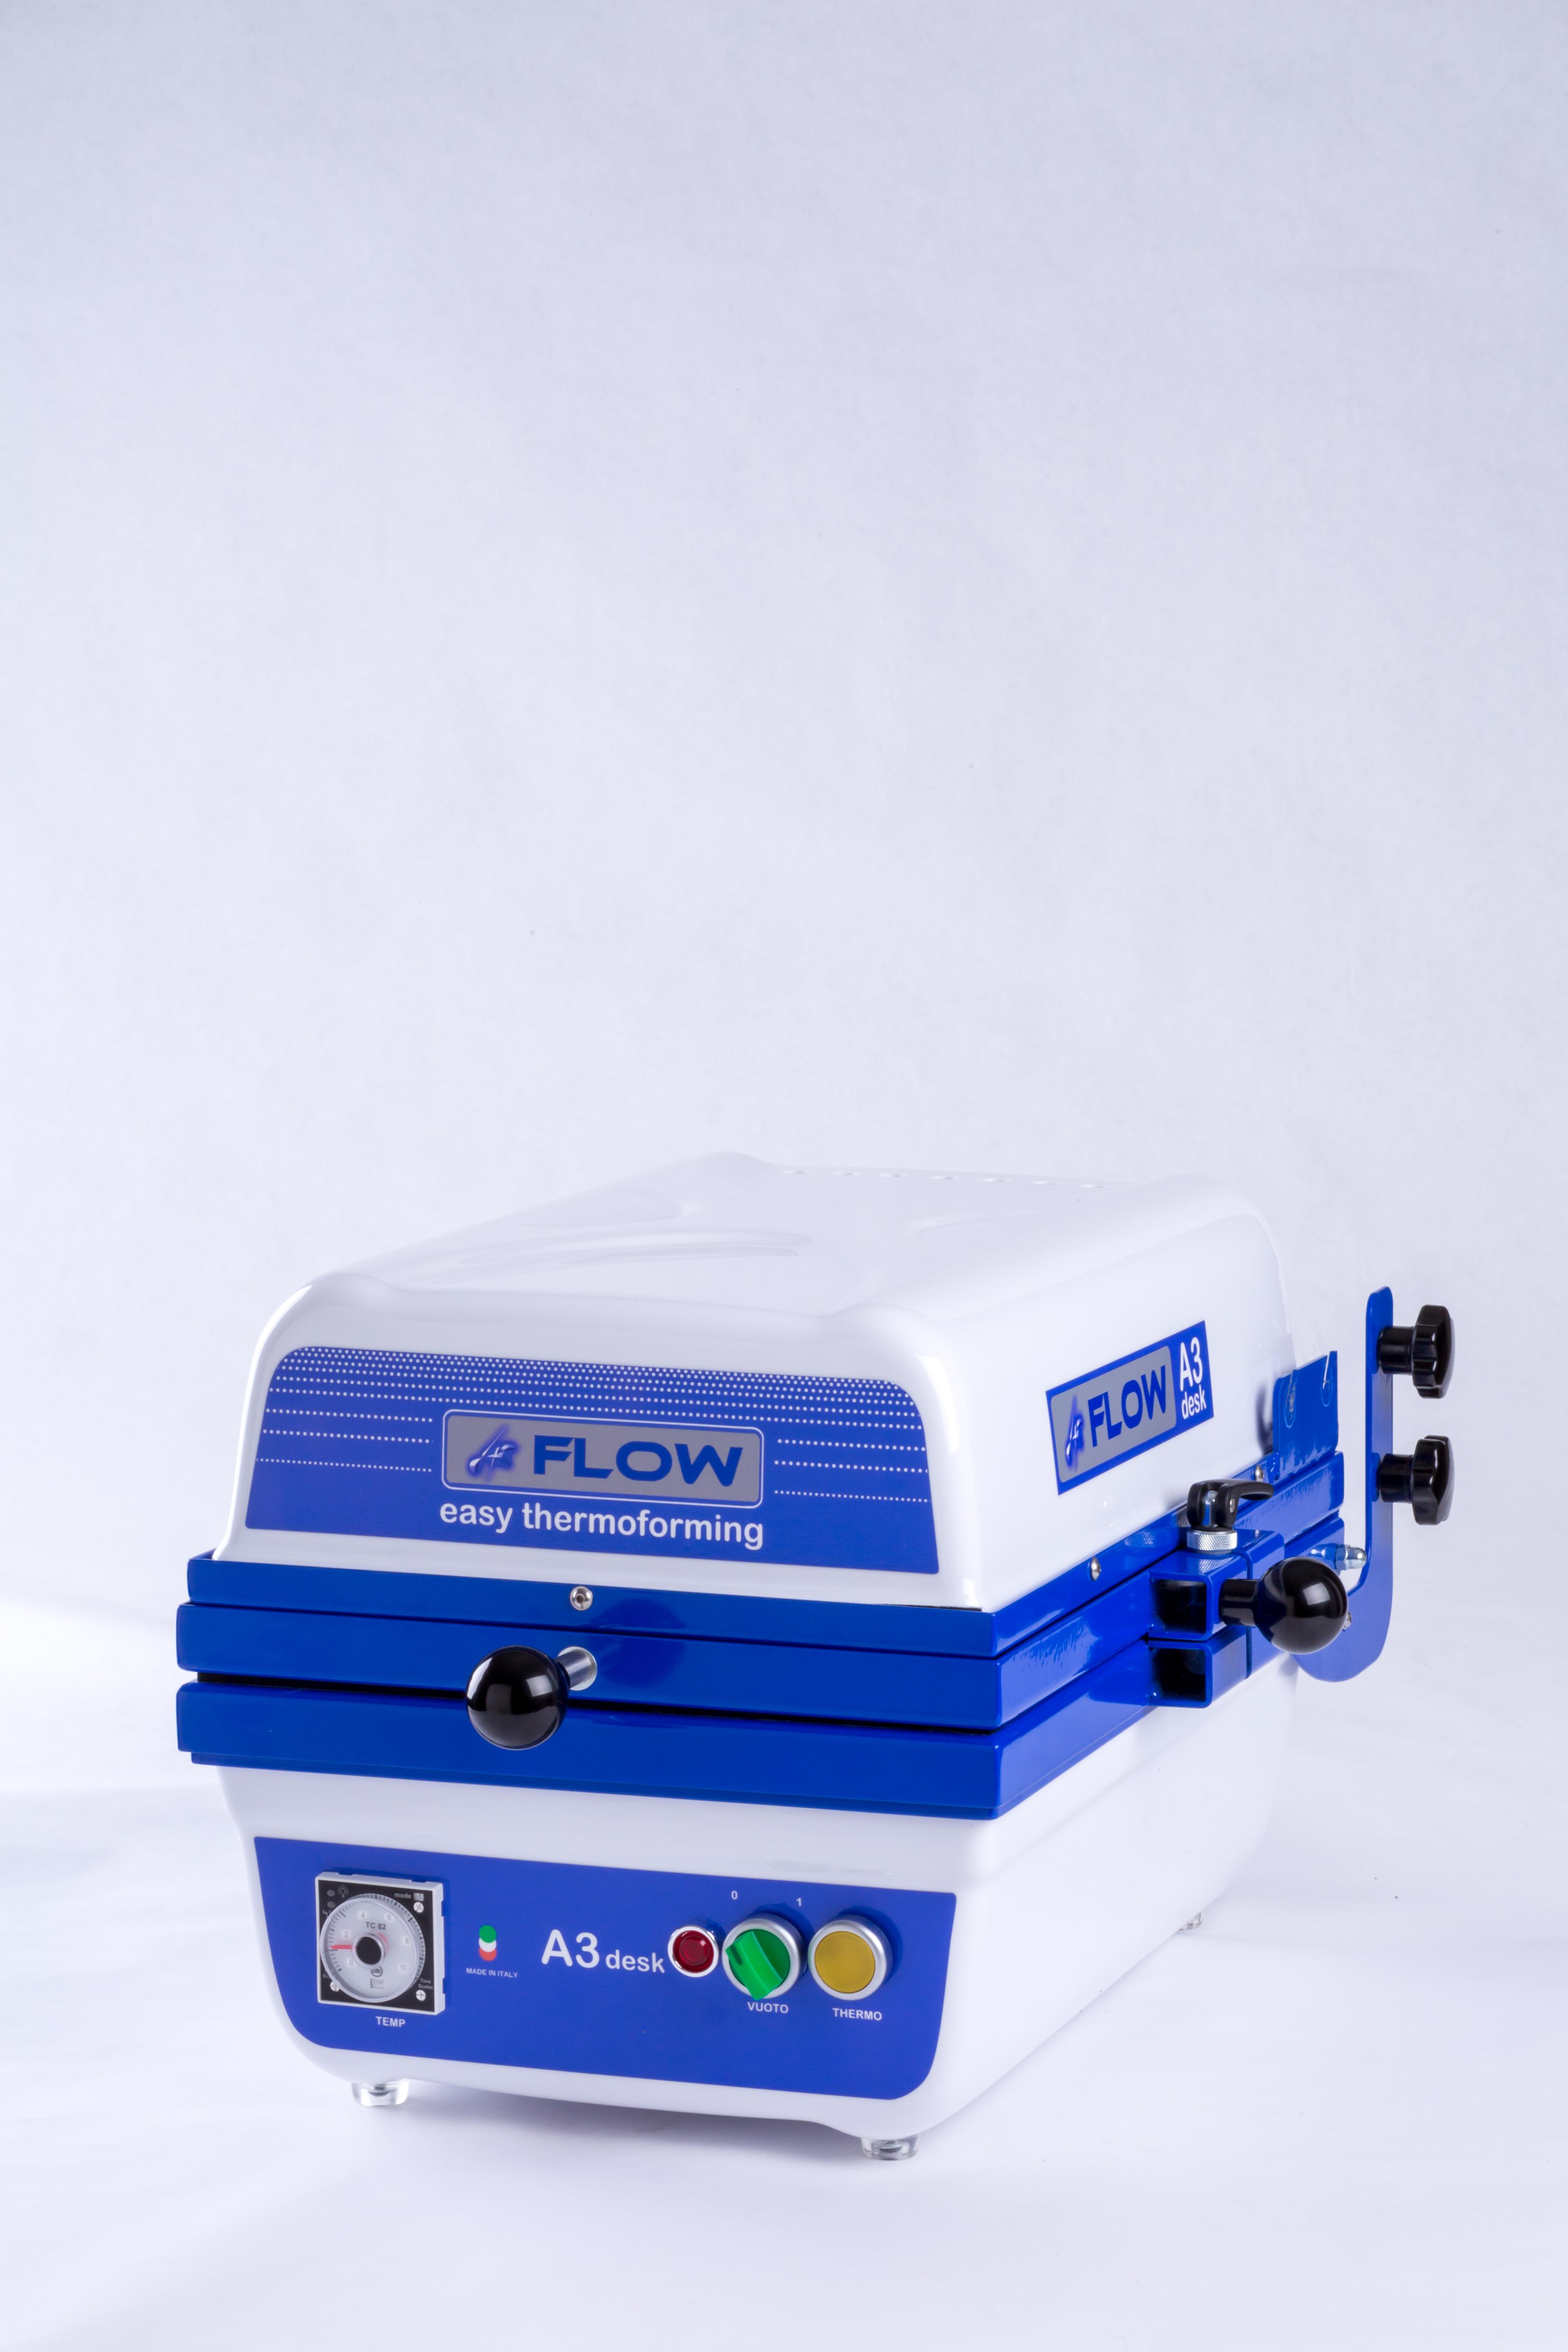 FLOW easy thermoforming presenta FLOW A3desk la termoformatrice per tutti in formato A3